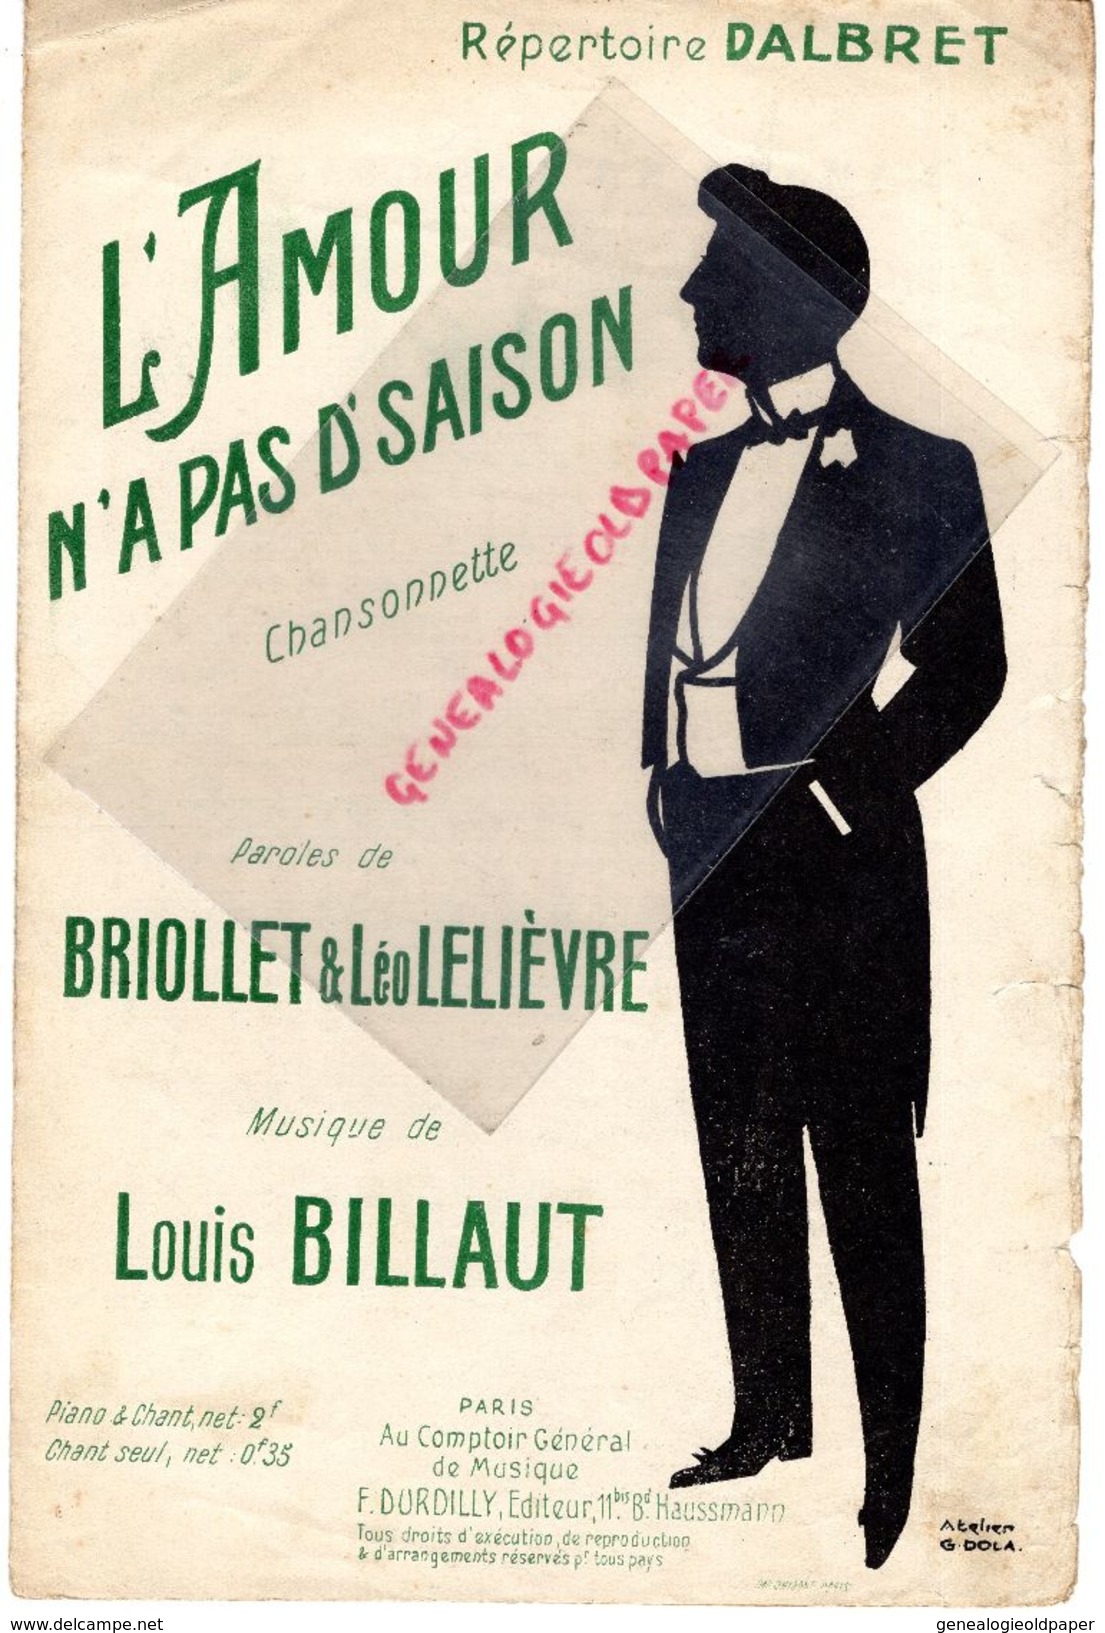 PARTITION MUSIQUE-L' AMOUR N'A PAS D' SAISON-DALBRET-BRIOLET & LEO LELIEVRE-LOUIS BILLAUT-PARIS DURDILLY-ATELIER G. DOLA - Partitions Musicales Anciennes